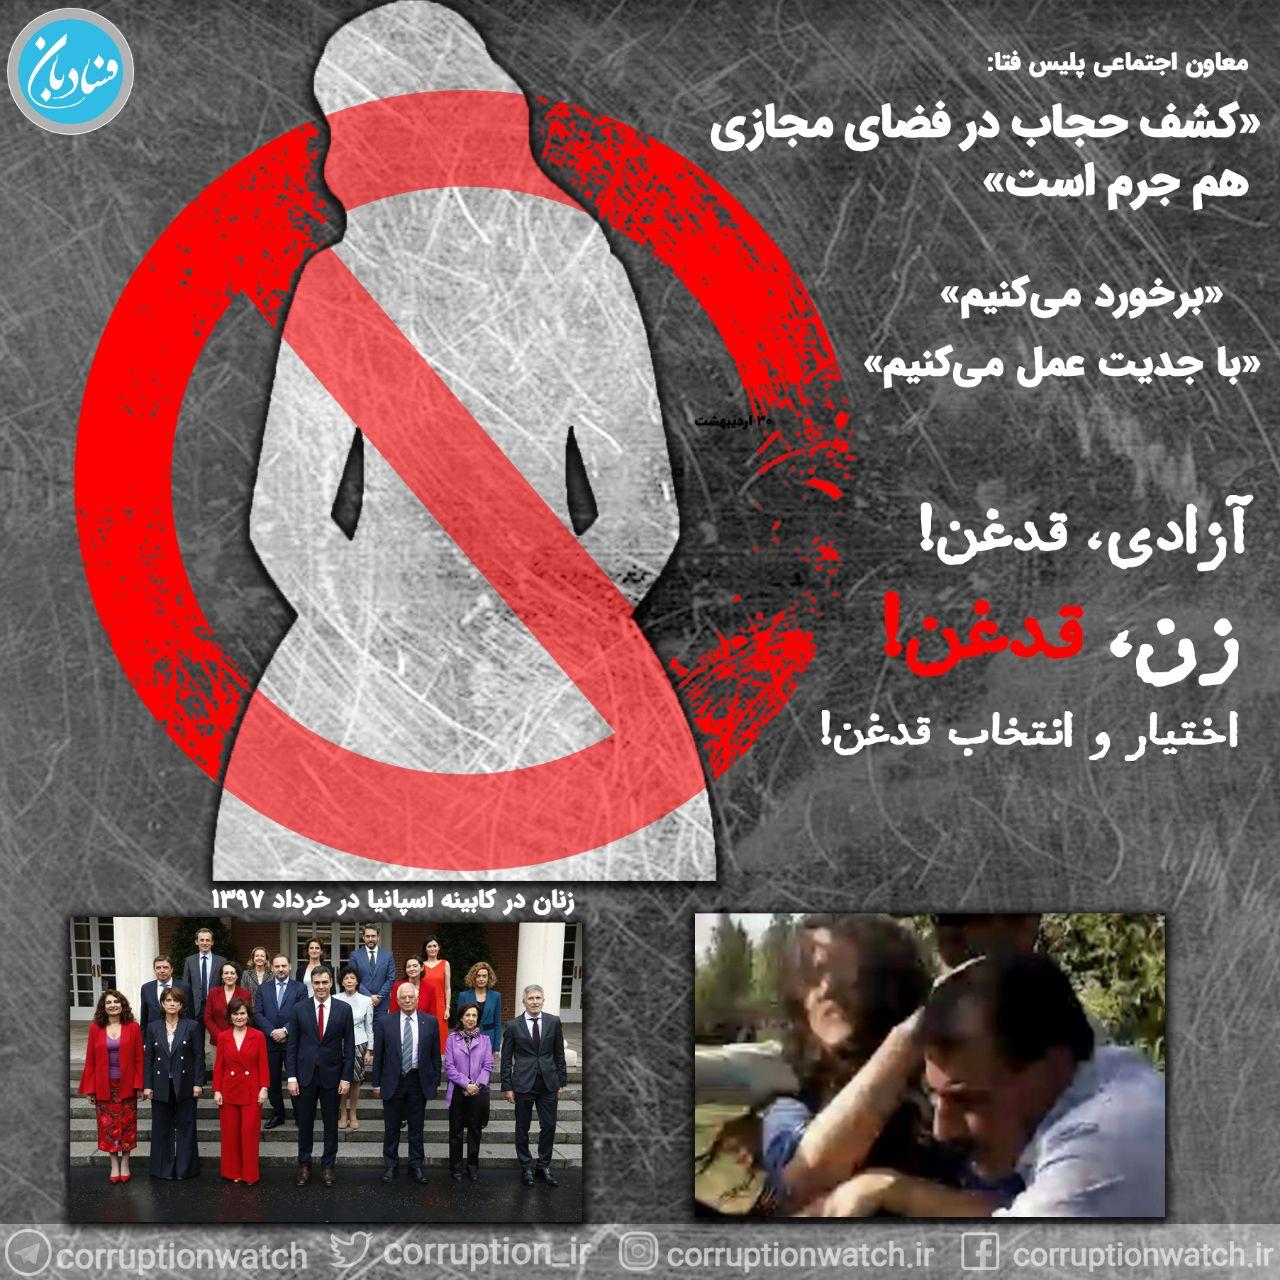 آزادی، قدغن!زن، قدغن! اختیار و انتخاب، قدغن! معاون اجتماعی پلیس فتا: «کشف حجاب در فضای مجازی هم جرم است زنان شاغل؛ برده‌داری جدید در ایران